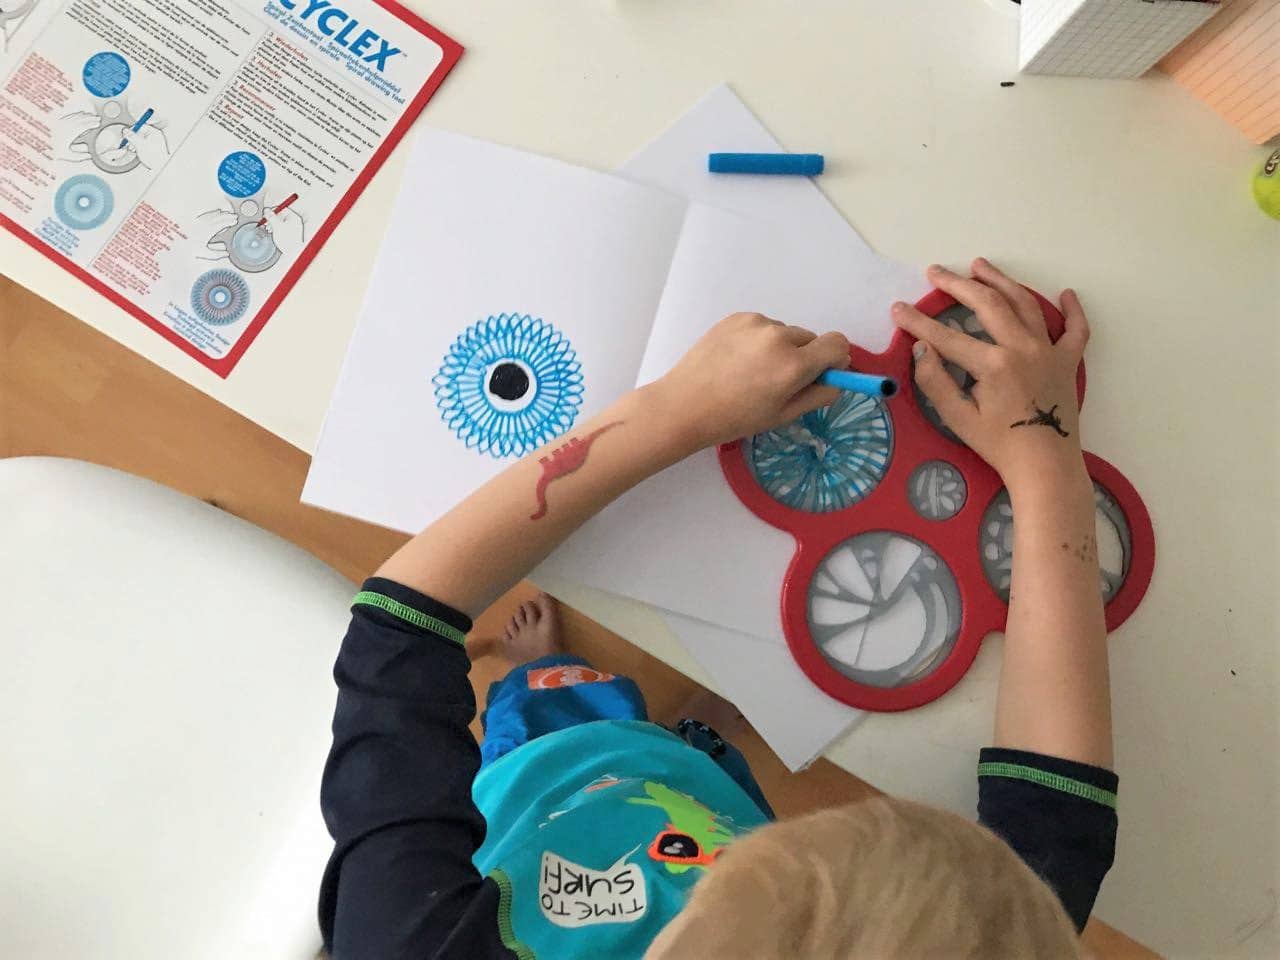 Super kreatives Geburtstagsgeschenk: ein Spirograph zum Malen von Mustern - Mehr Infos auf mamaskind.de